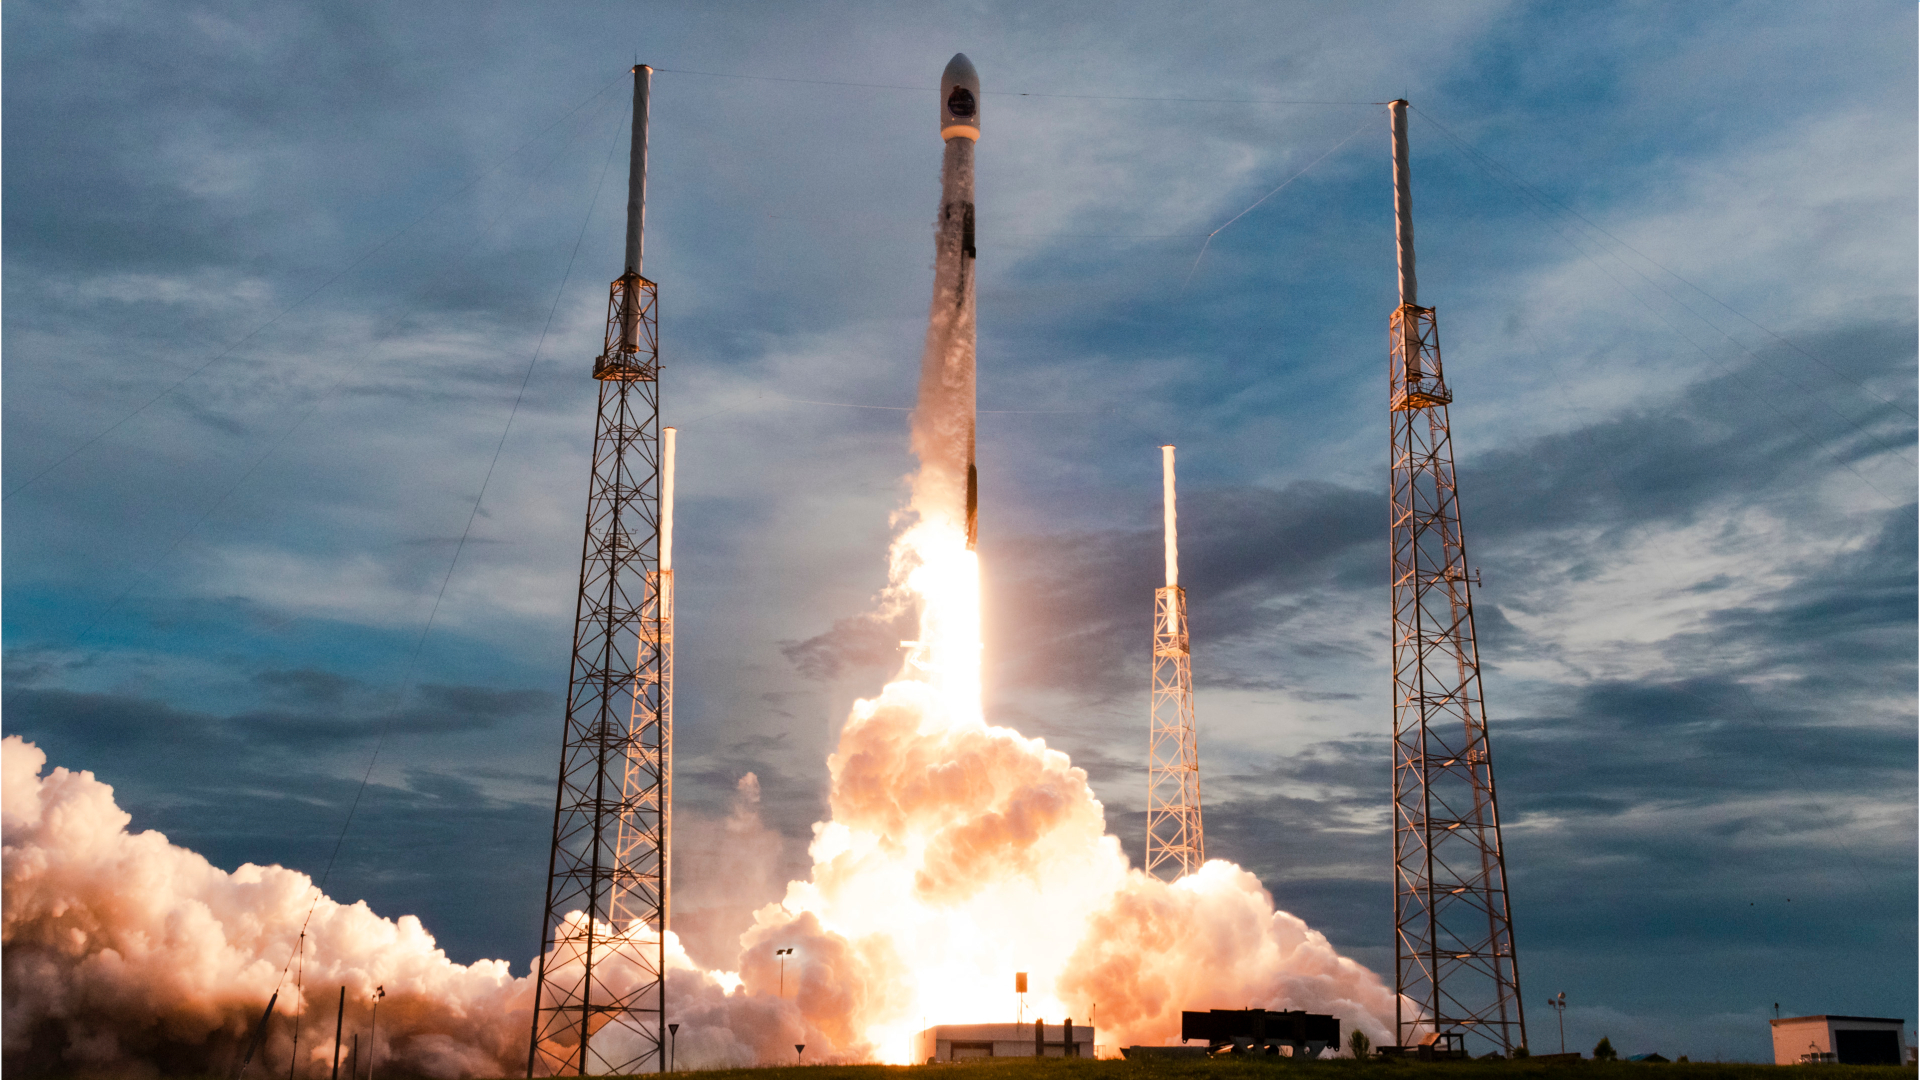 1- El satélite argentino de observación de la tierra SAOCOM 1B, de la Comisión Nacional de Actividades Espaciales (CONAE), fue lanzado el 30 de agosto desde las instalaciones de la empresa SpaceX, en Cabo Cañaveral, Estados Unidos, a bordo del lanzador Falcon 9.
